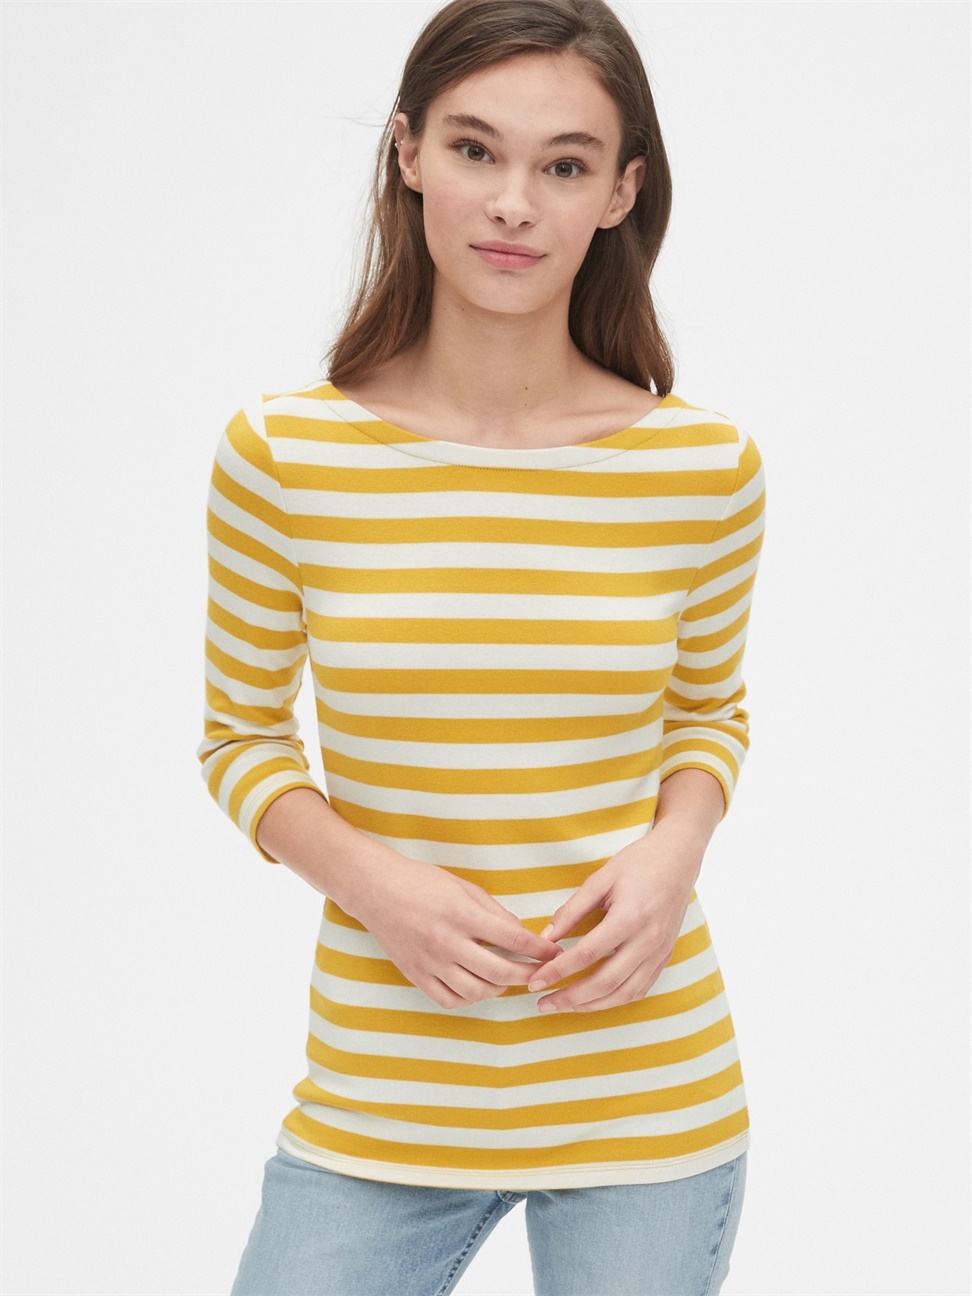 女裝|莫代爾條紋低露背七分袖T恤-黃色條紋